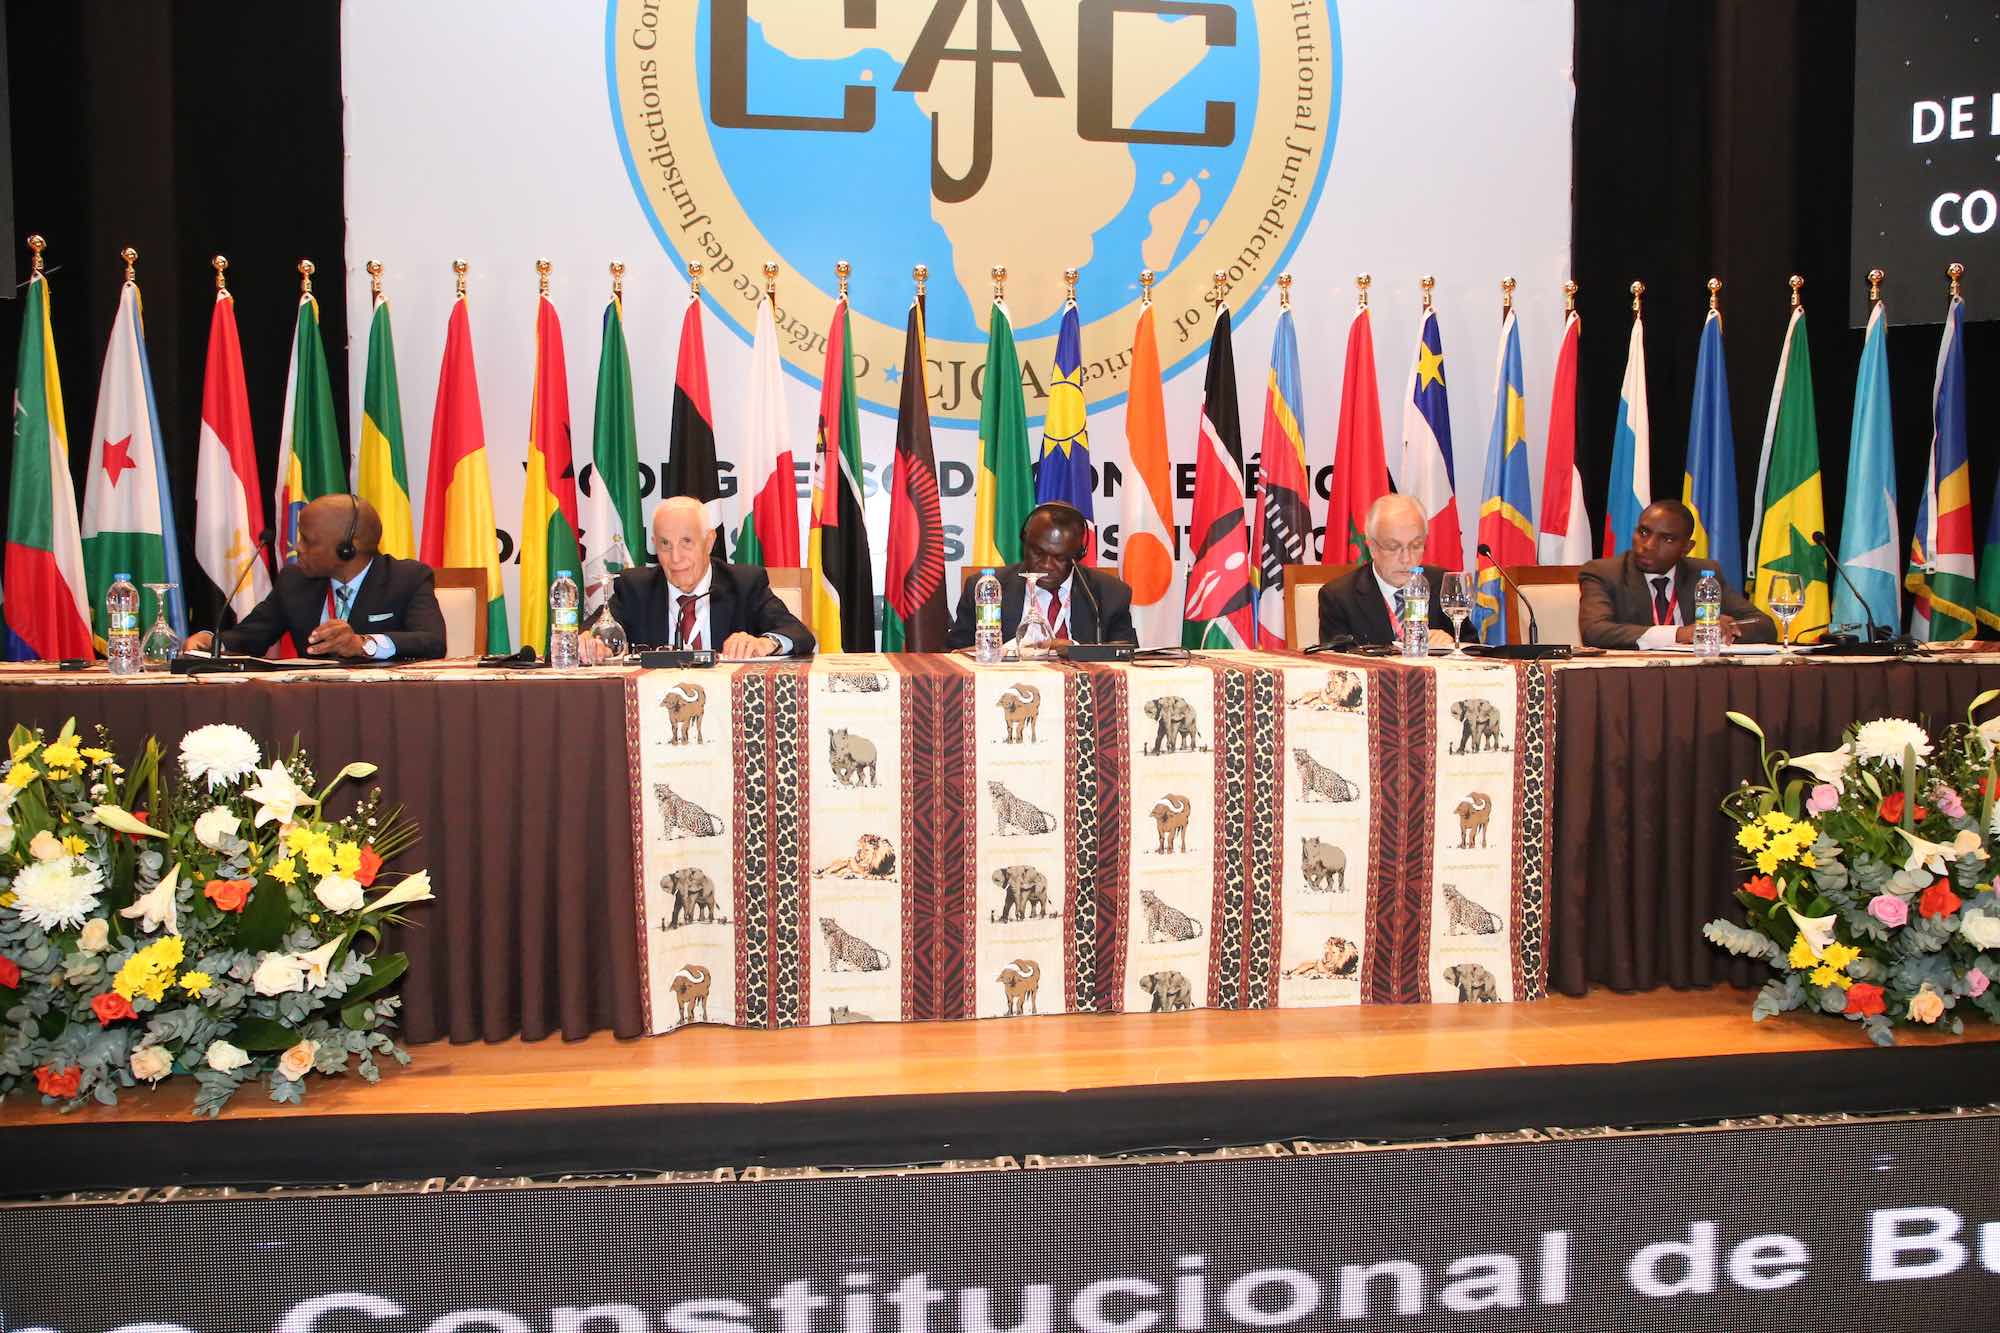 V Congresso da Conferência das Jurisdições Constitucionais de África - CJCA 